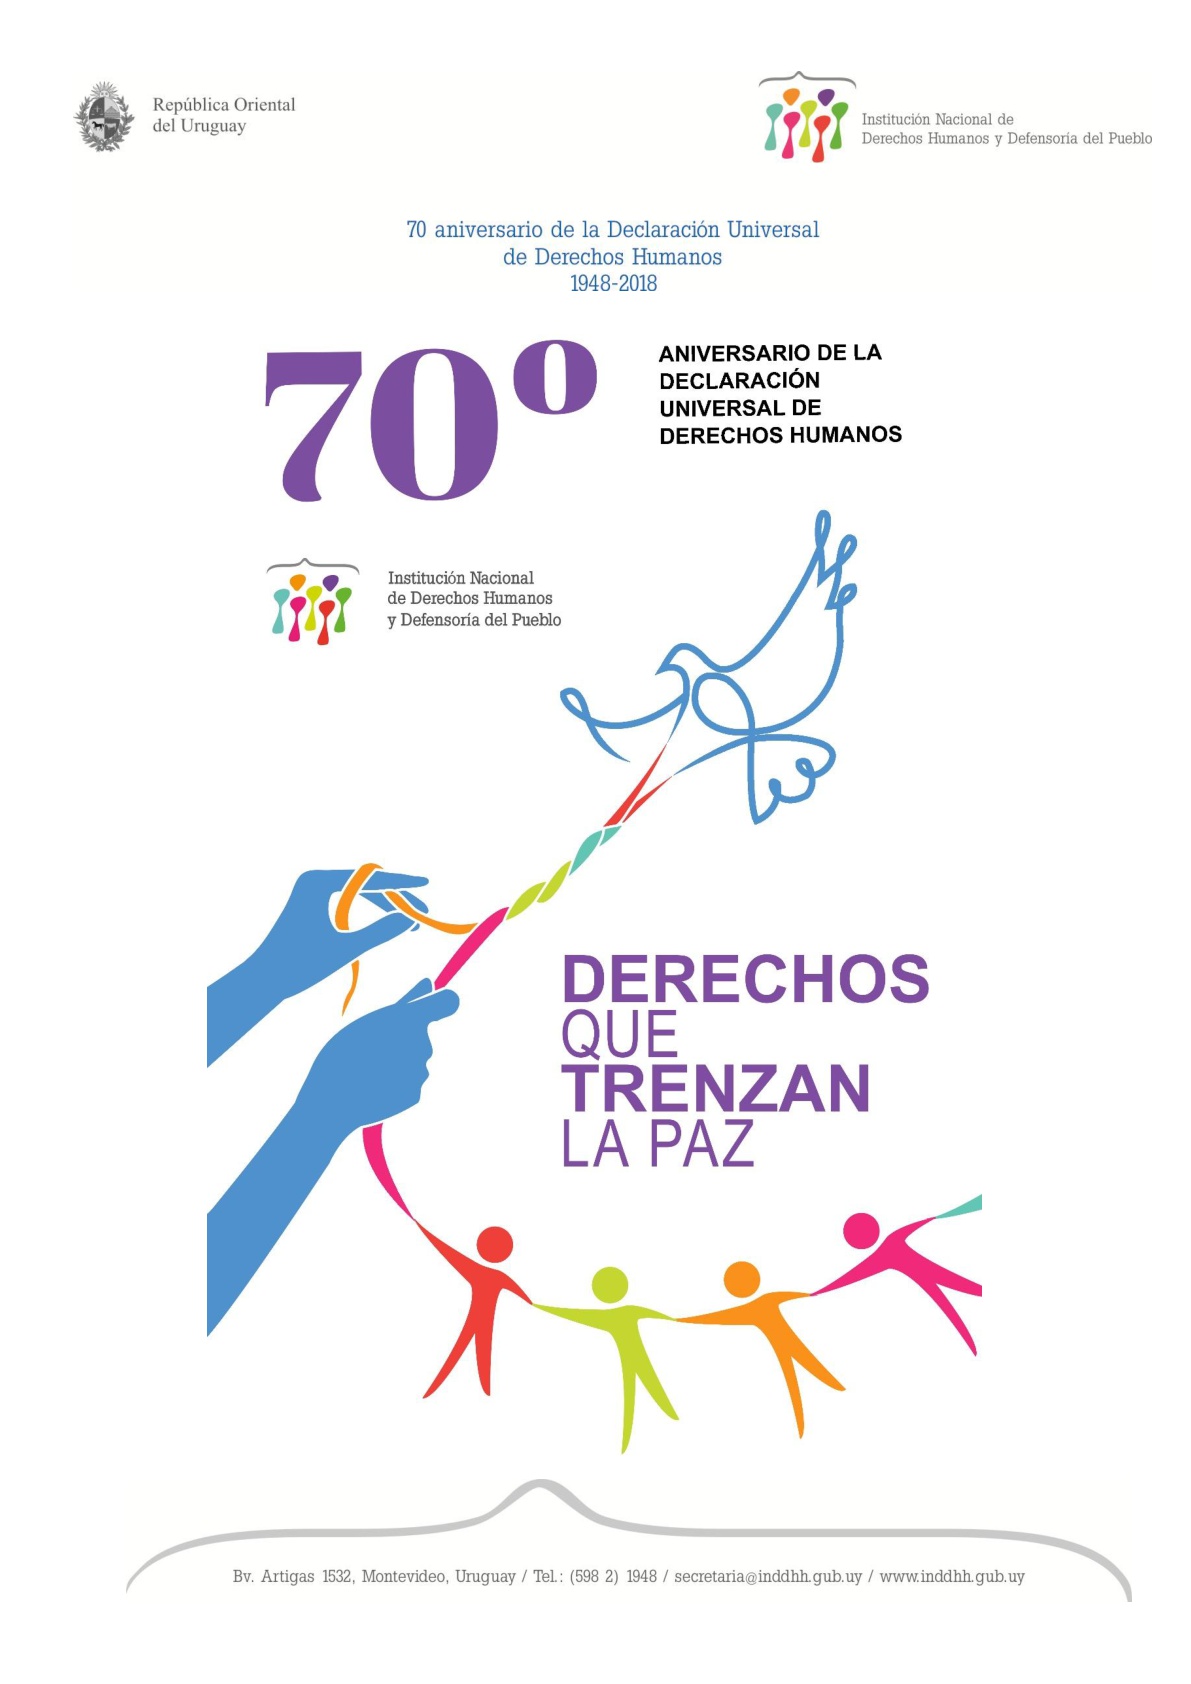 El Defensor del Pueblo de la Nación colaborará con la difusión en una obra colectiva convocada por la Institución Nacional de Derechos Humanos y Defensoría del Pueblo de Uruguay